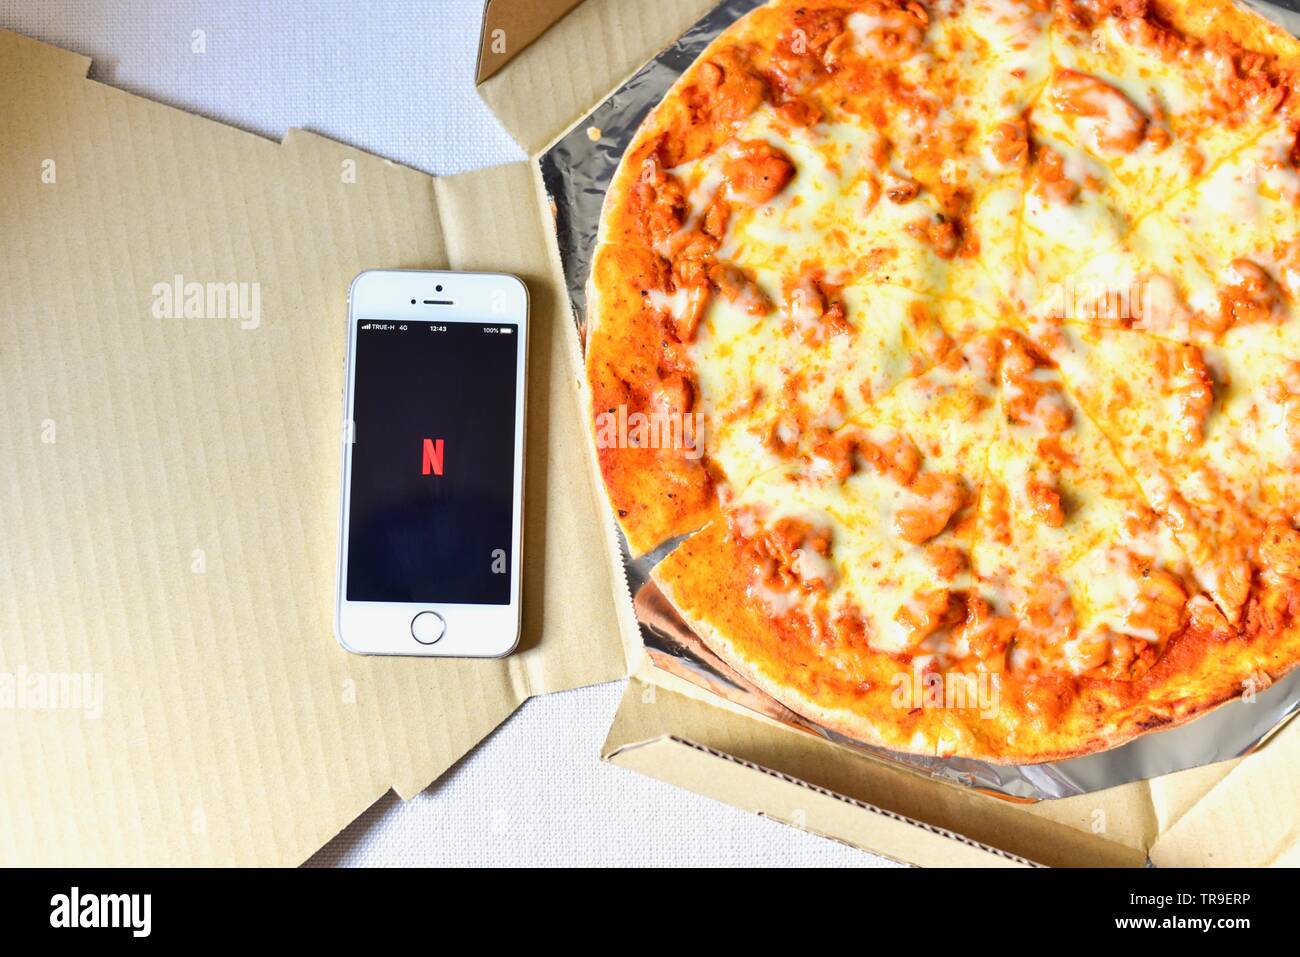 Draufsicht auf das Smartphone mit Netflix Anwendung auf dem Bildschirm und Pizza auf der Seite Stockfoto